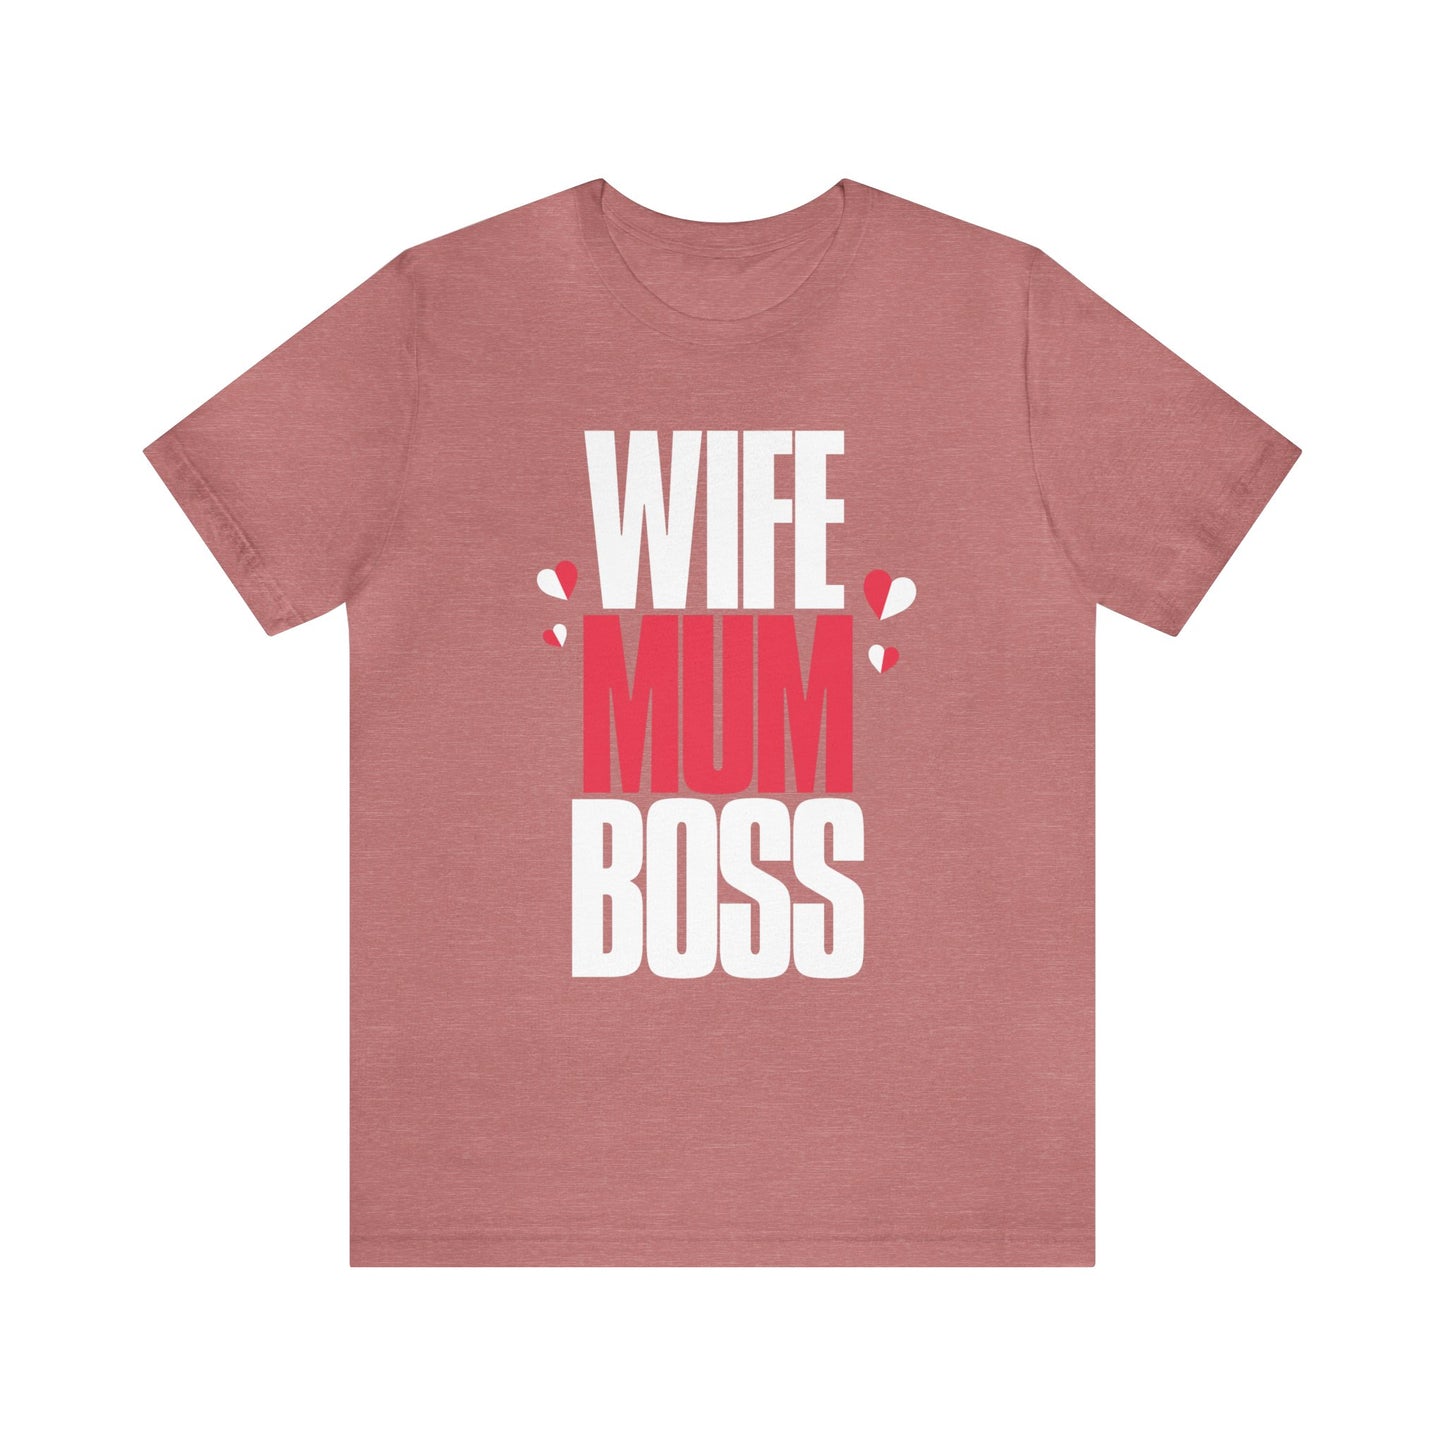 Wife mum boss Jersey Short Sleeve Tee